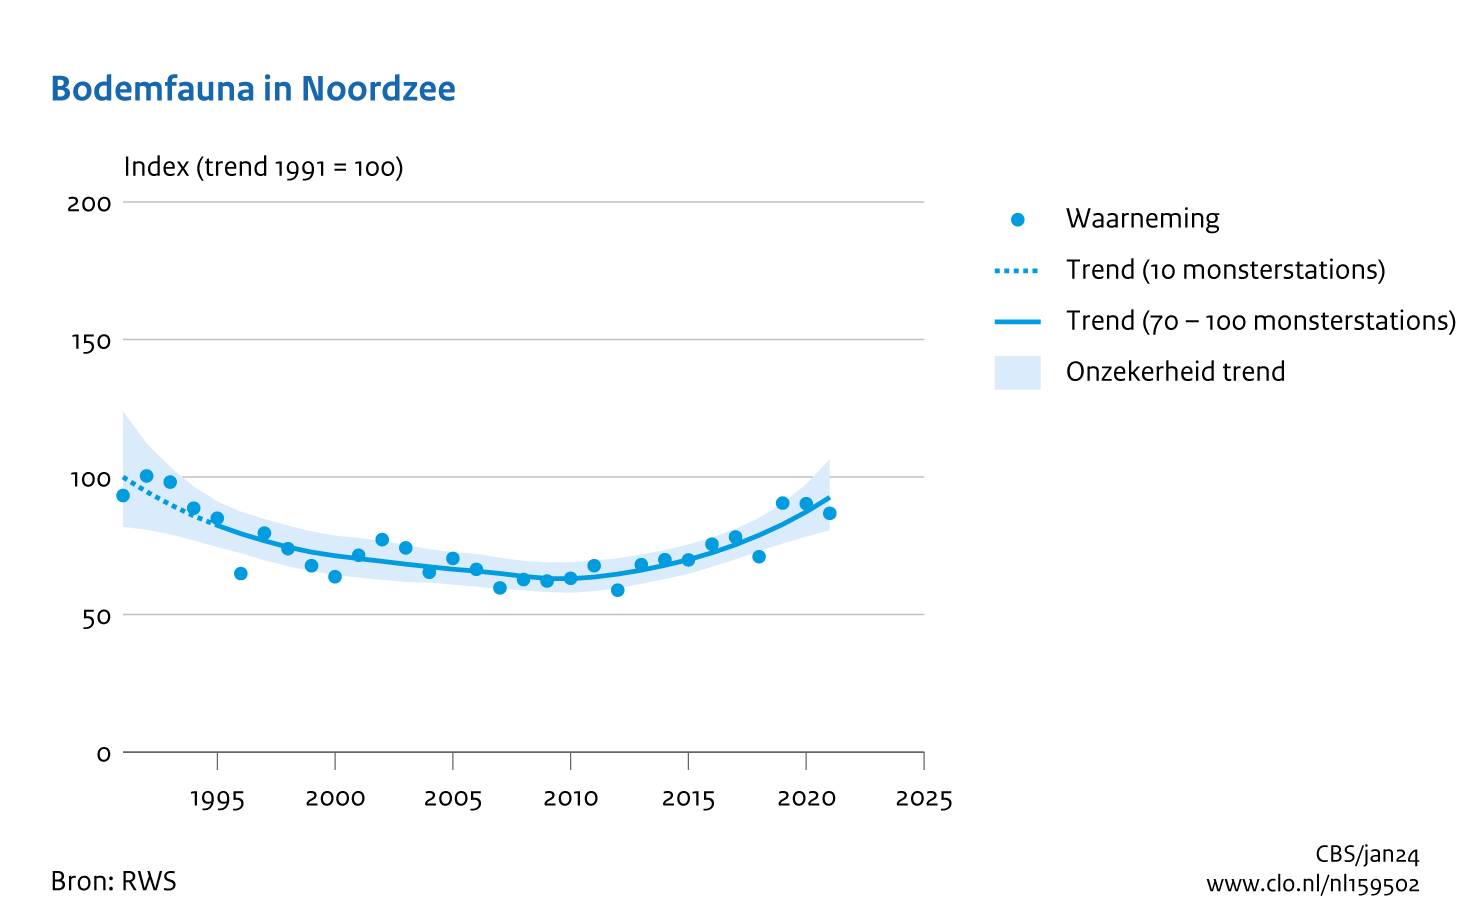 De grafiek Bodemfauna in Noordzee laat zien dat diersoorten van de bodem van de Noordzee sinds 1991 eerst in aantal gezakt zijn tot 2009 - 2010. Toen lag de trend op indexwaarde 63. Na 2010 zijn de indexen weer gestegen. In het laatste jaar van meting, 2021, is de indexwaarde van de trend 93.